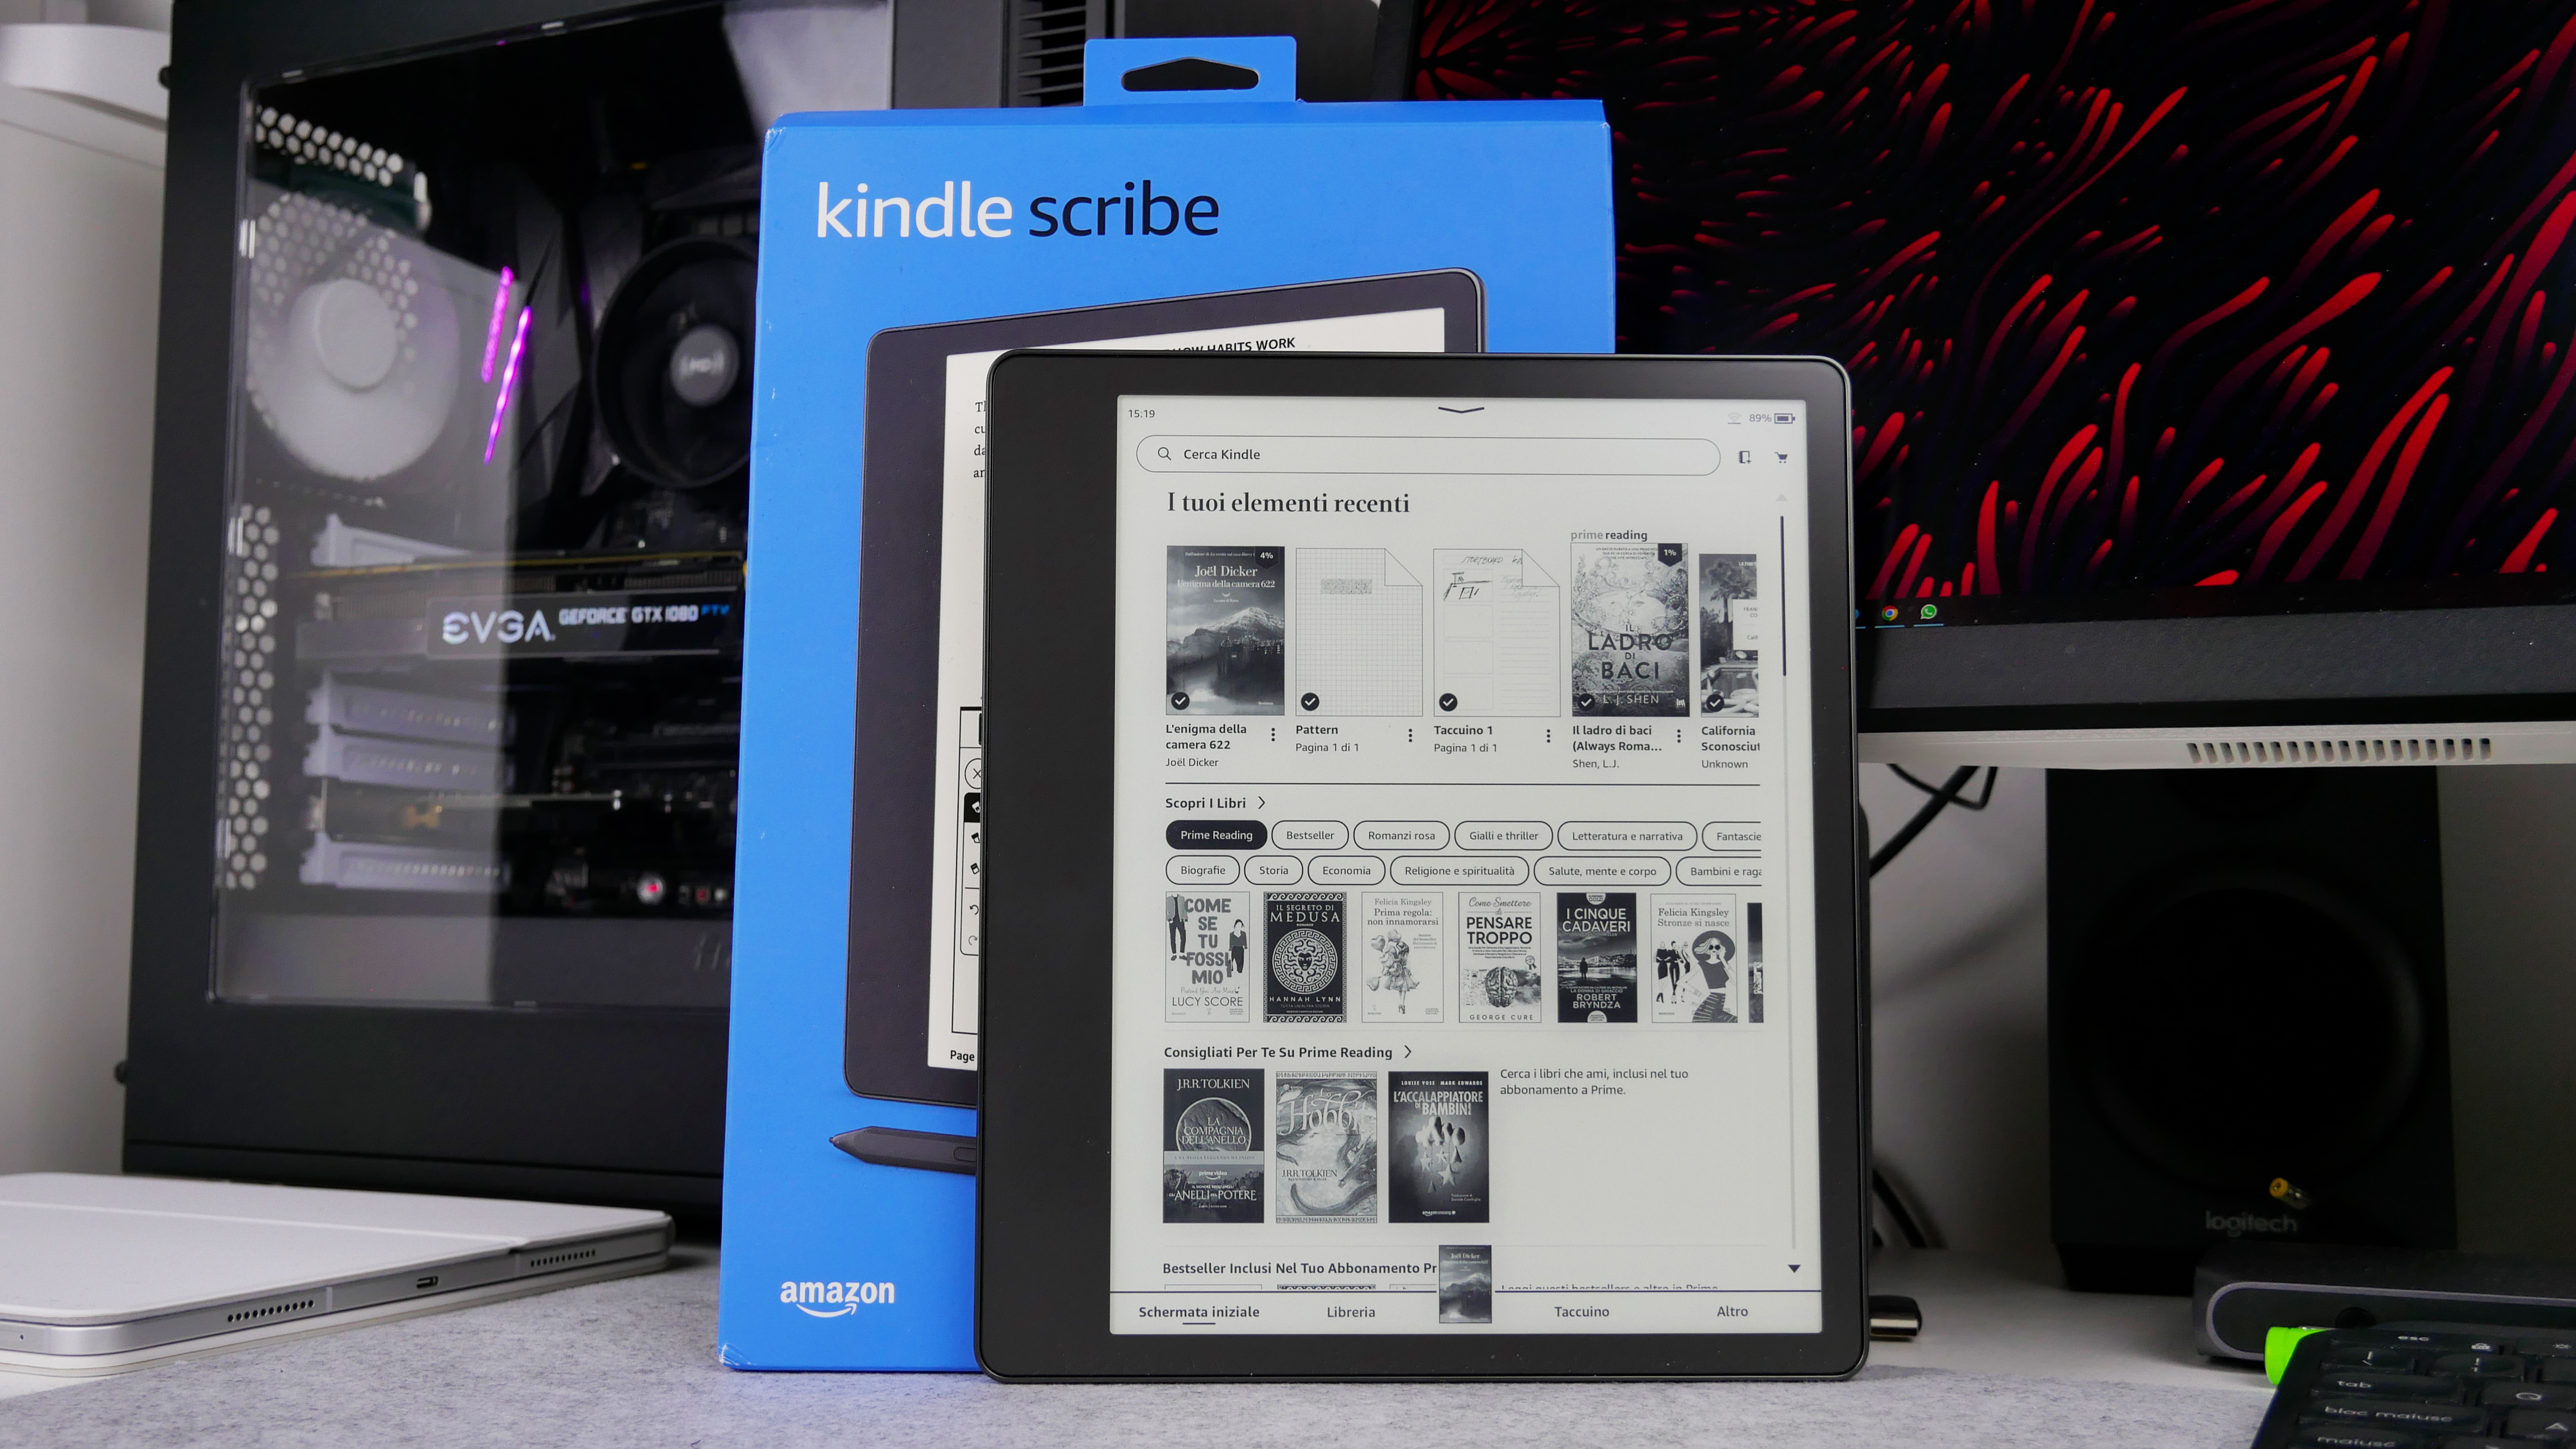 Kindle Scribe: finalmente si può scrivere oltre che leggere! La recensione  | Hardware Upgrade